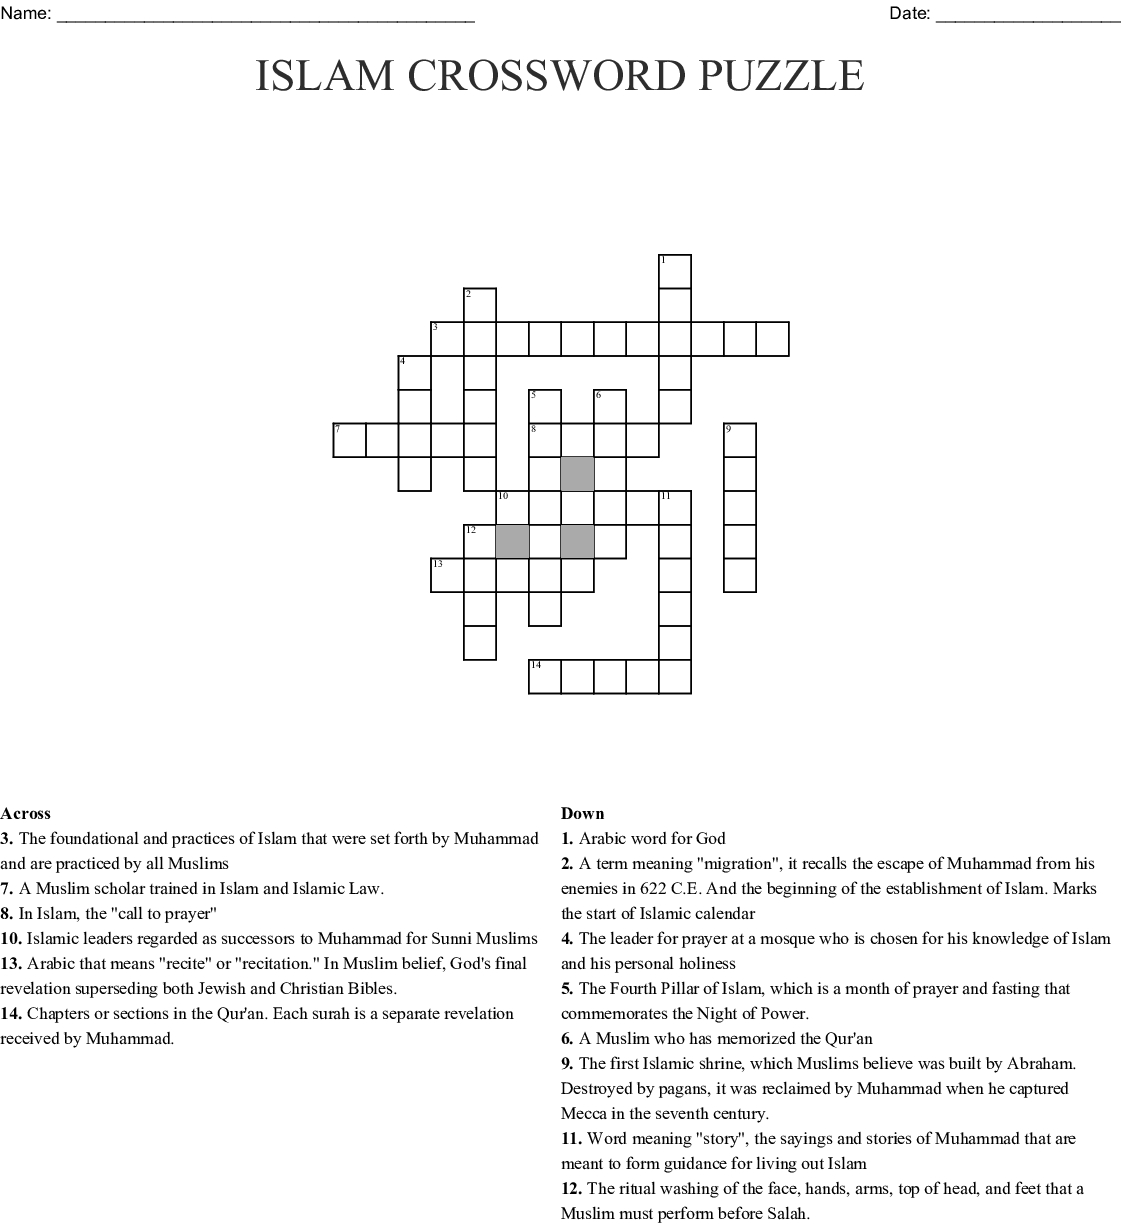 Islam Crossword Puzzle Crossword - Wordmint - Islamic Crossword Puzzles Printable